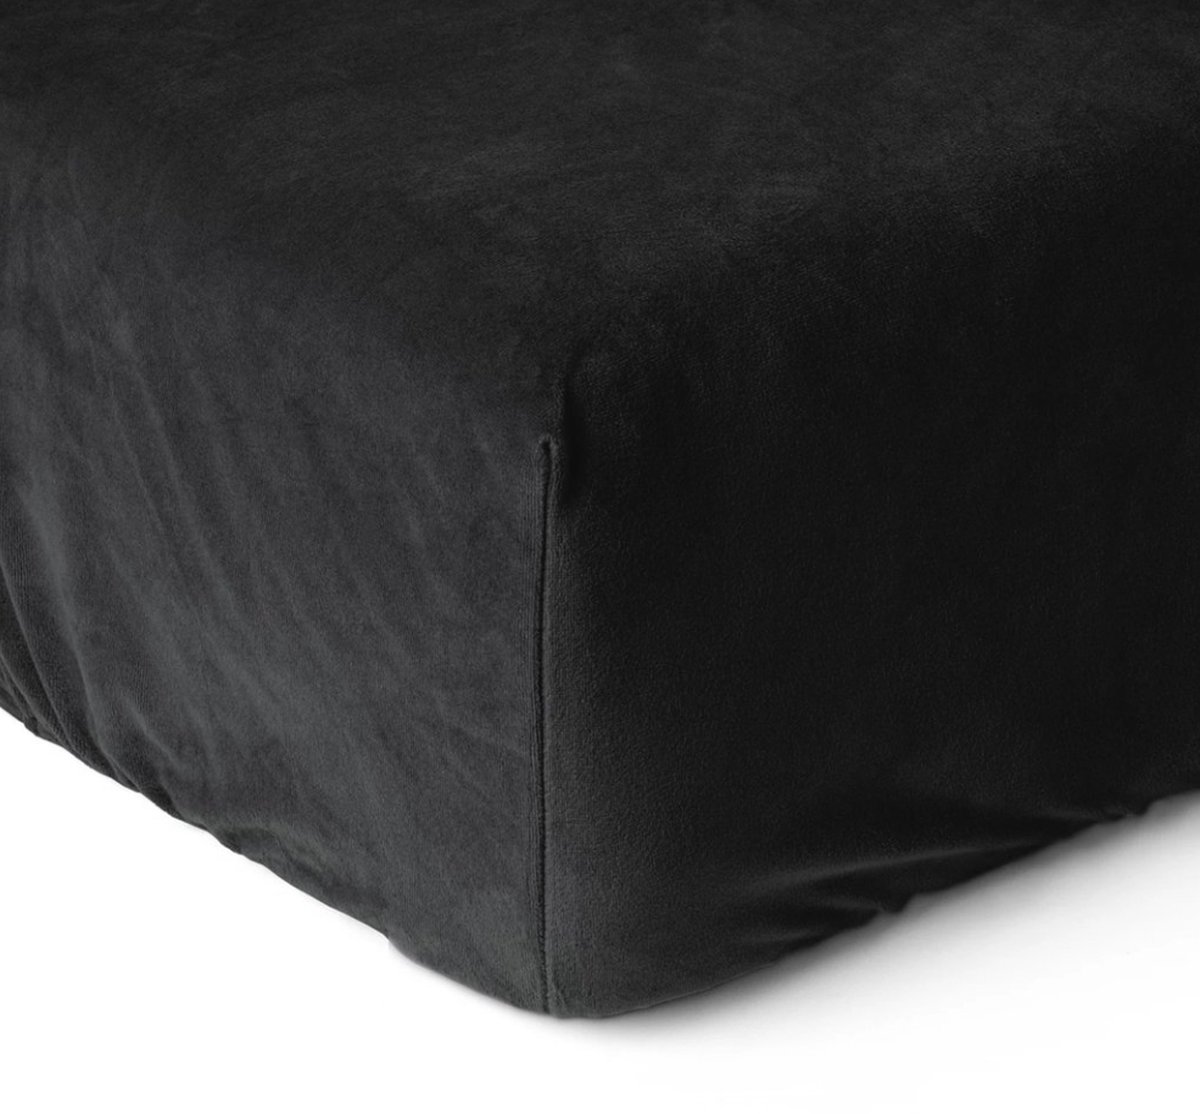 Fluweel zachte velvet hoeslaken zwart - 90x200 (eenpersoons) - dikke kwaliteit - zeer comfortabel - ideale pasvorm